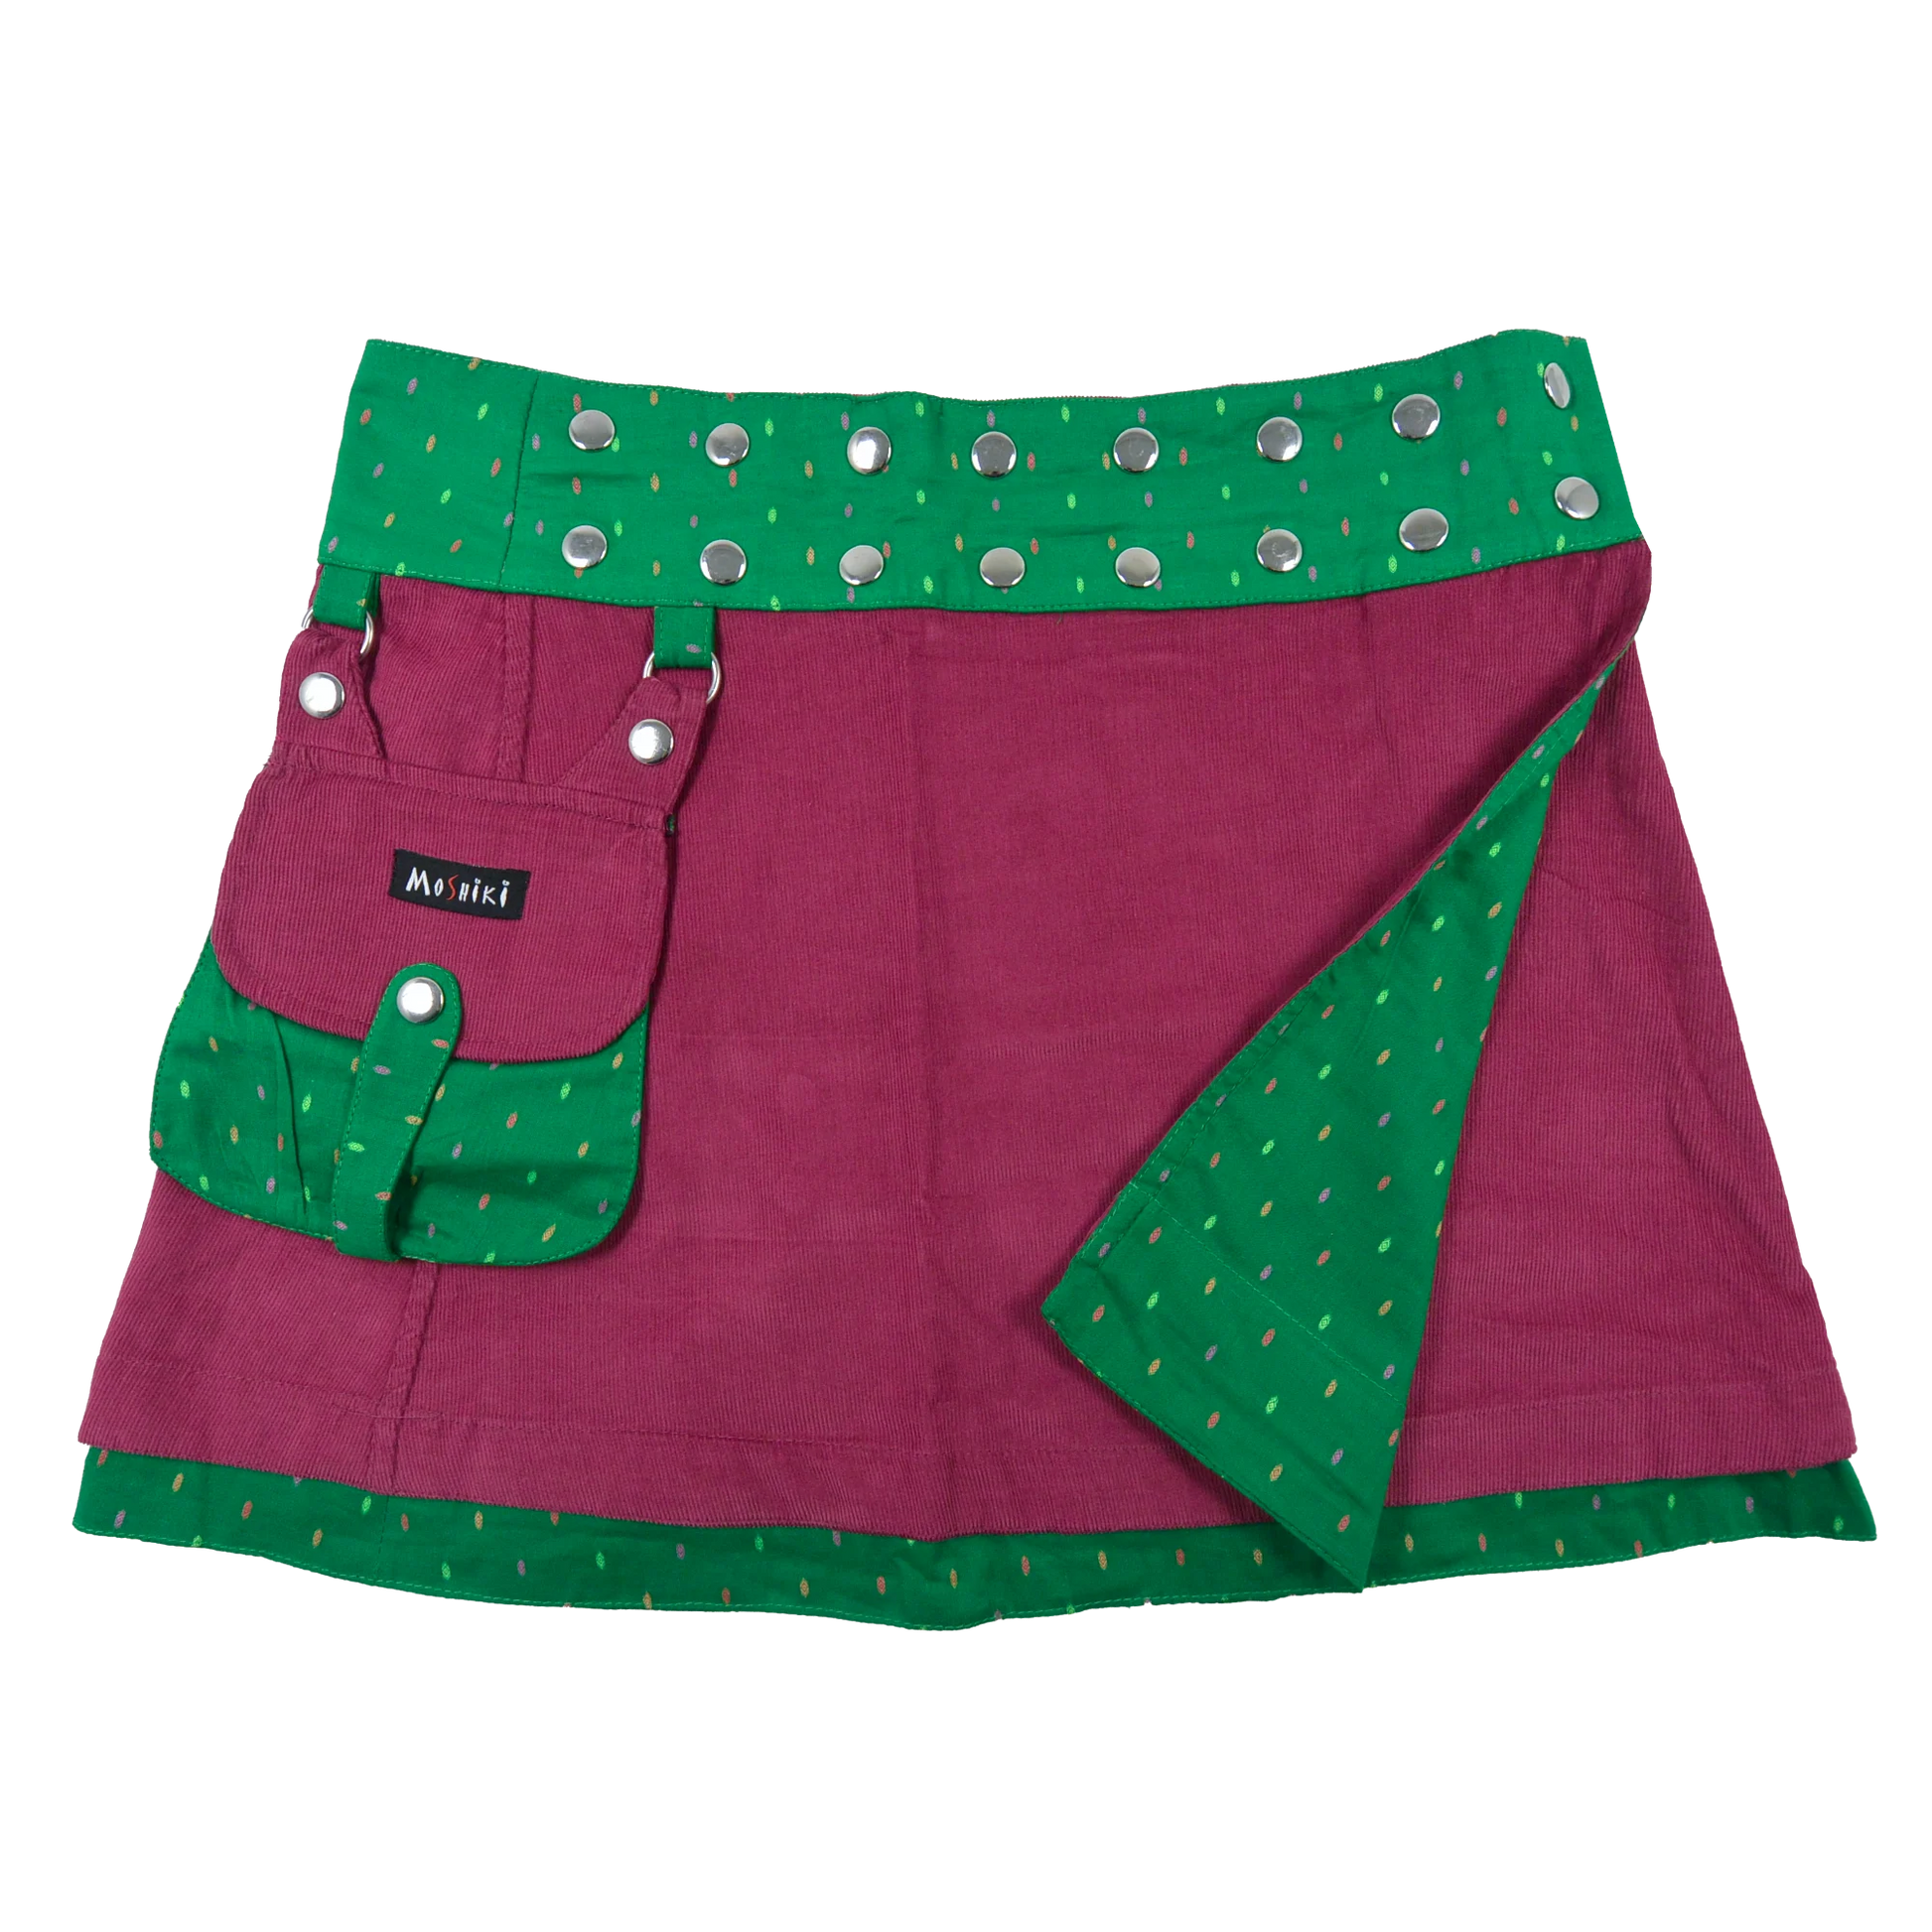 Wenderock aus Cord, Pink/Grün mit abnehmbarer Tasche. Umfang ist mit einer doppelten Druckknopfleiste am Rockbund einstellbar